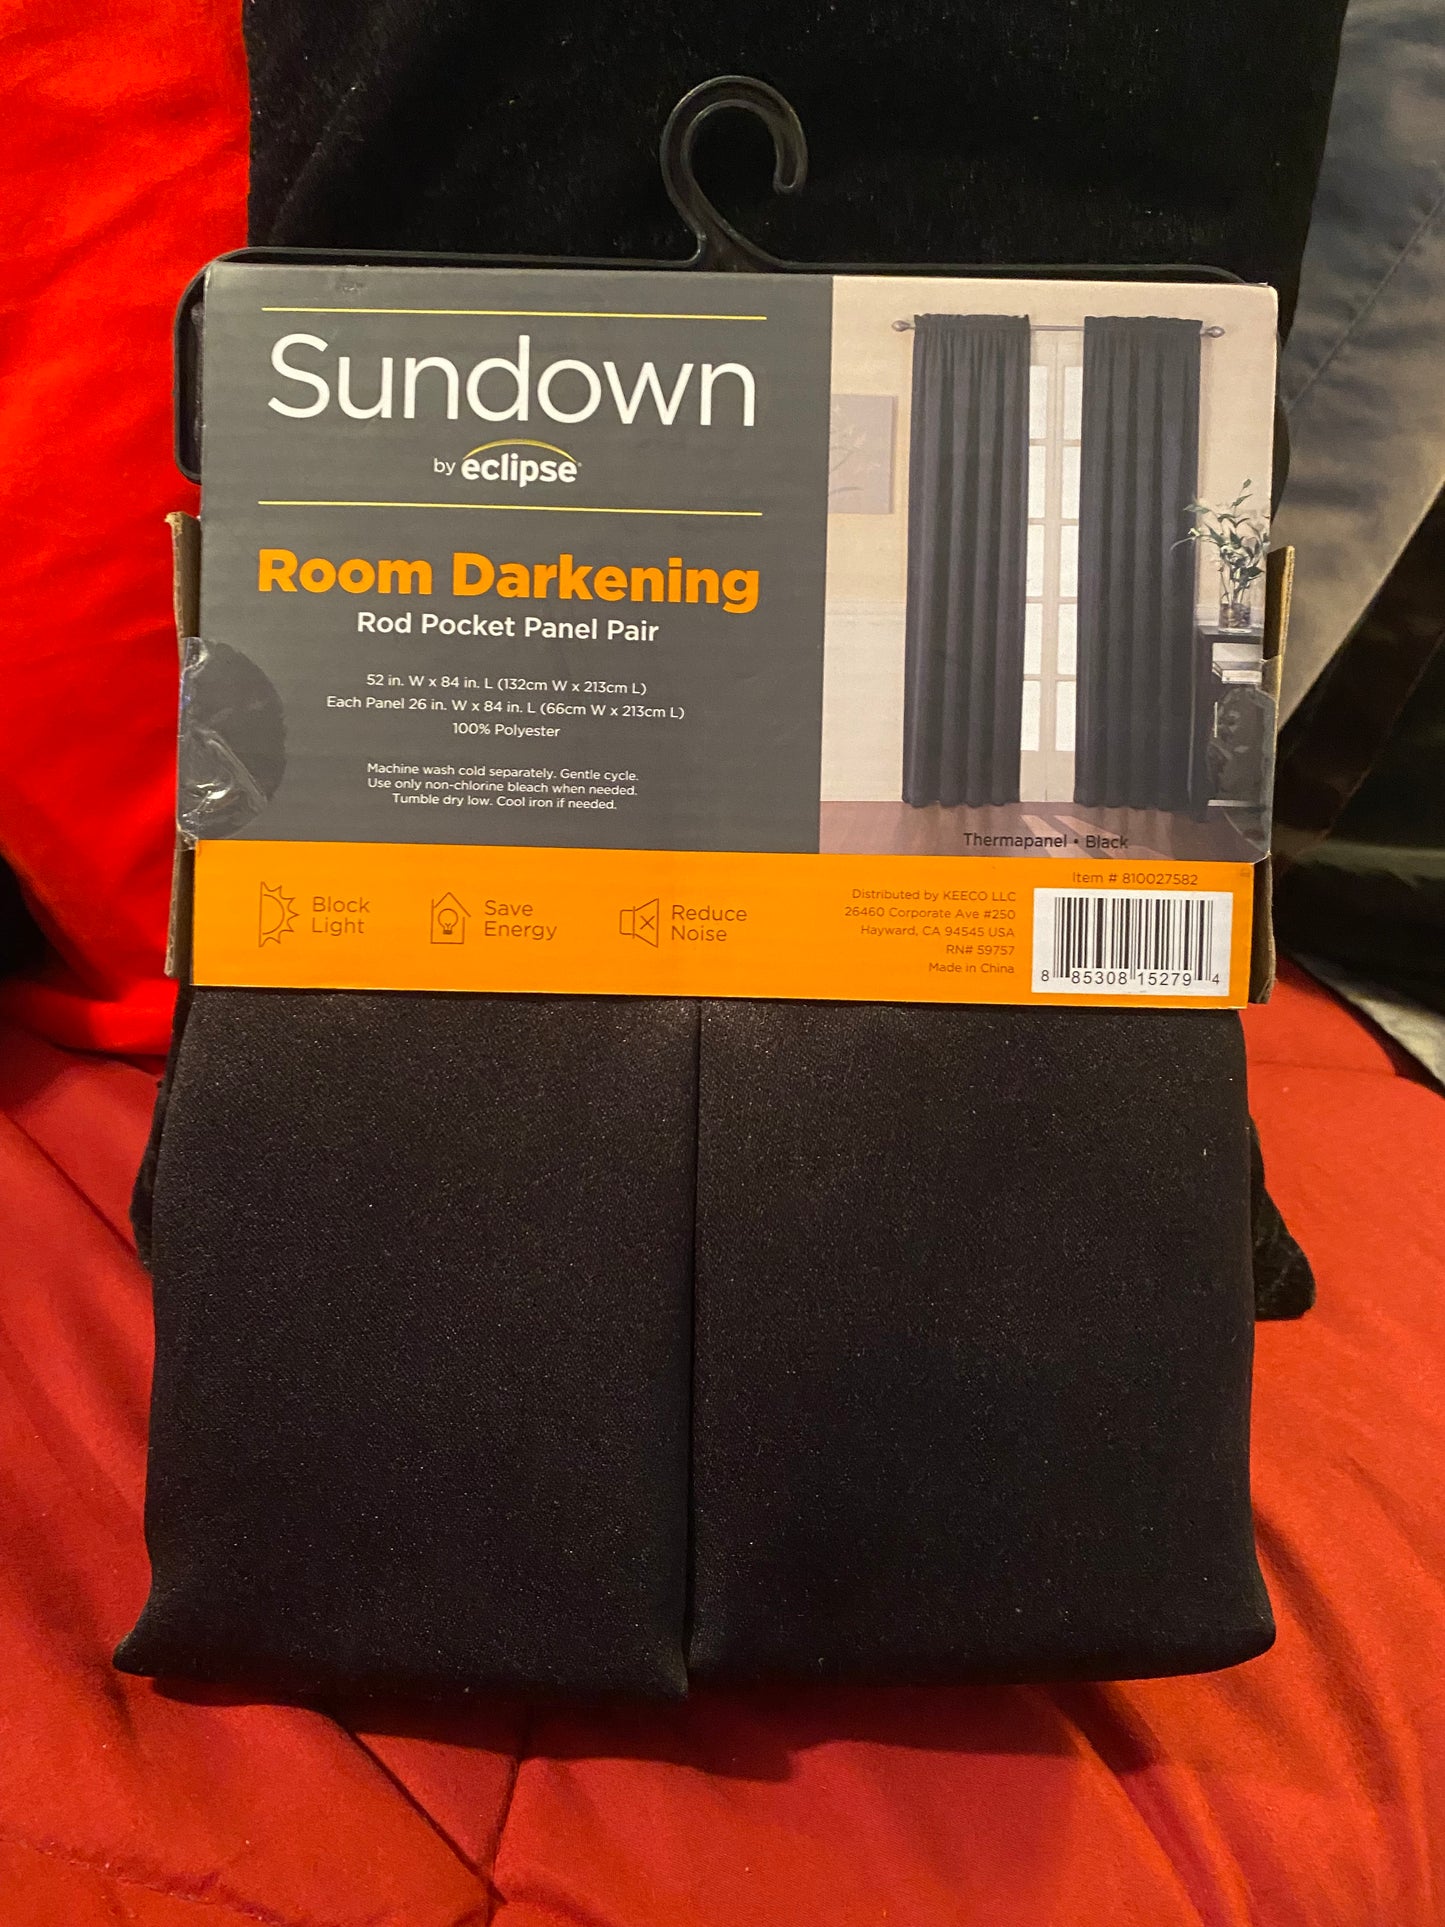 Sundown Room Panels